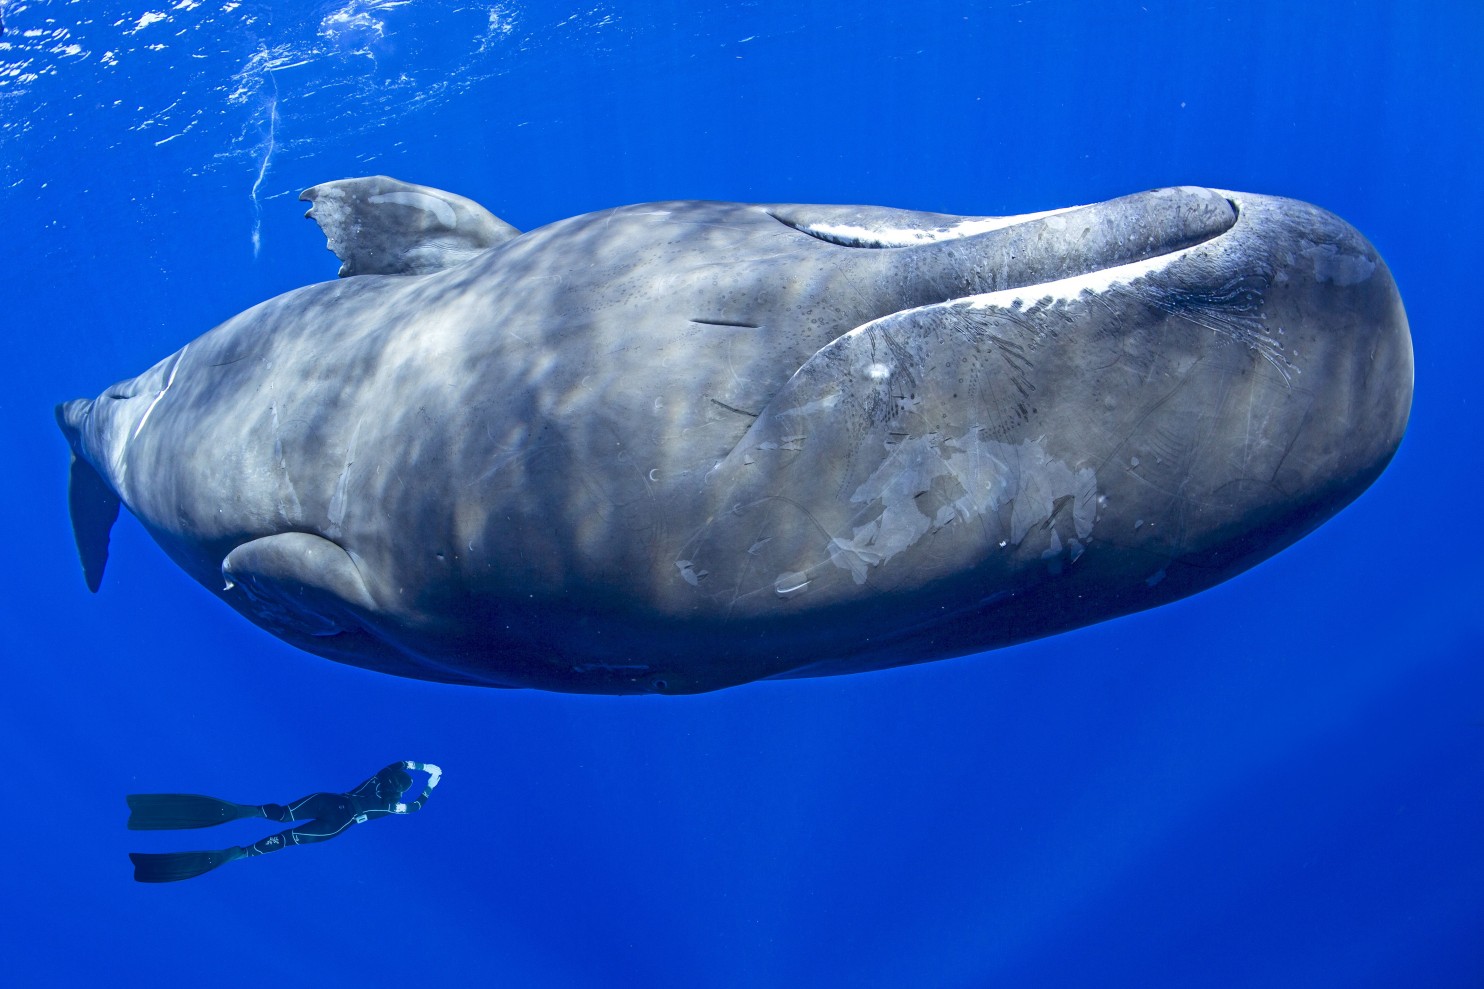 A Sperm whale’s poop neutralizes carbon dioxide